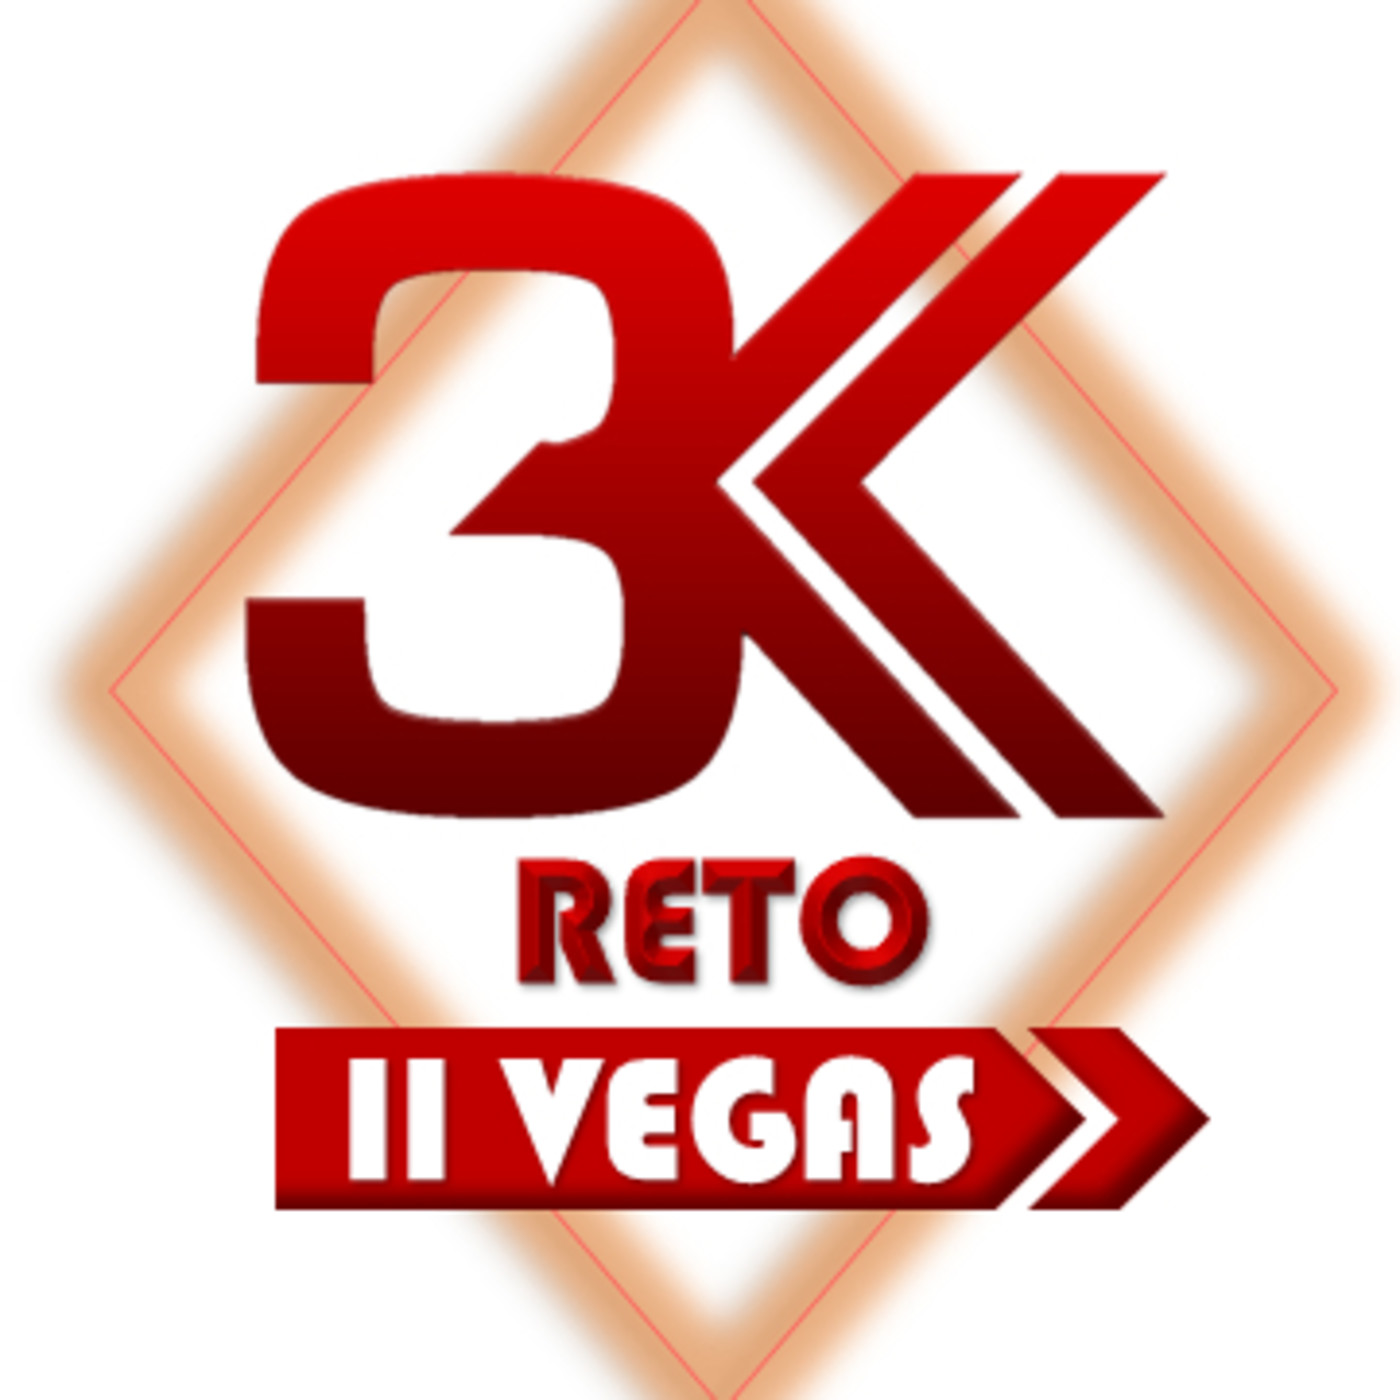 Reto2 3KReto III Vegas